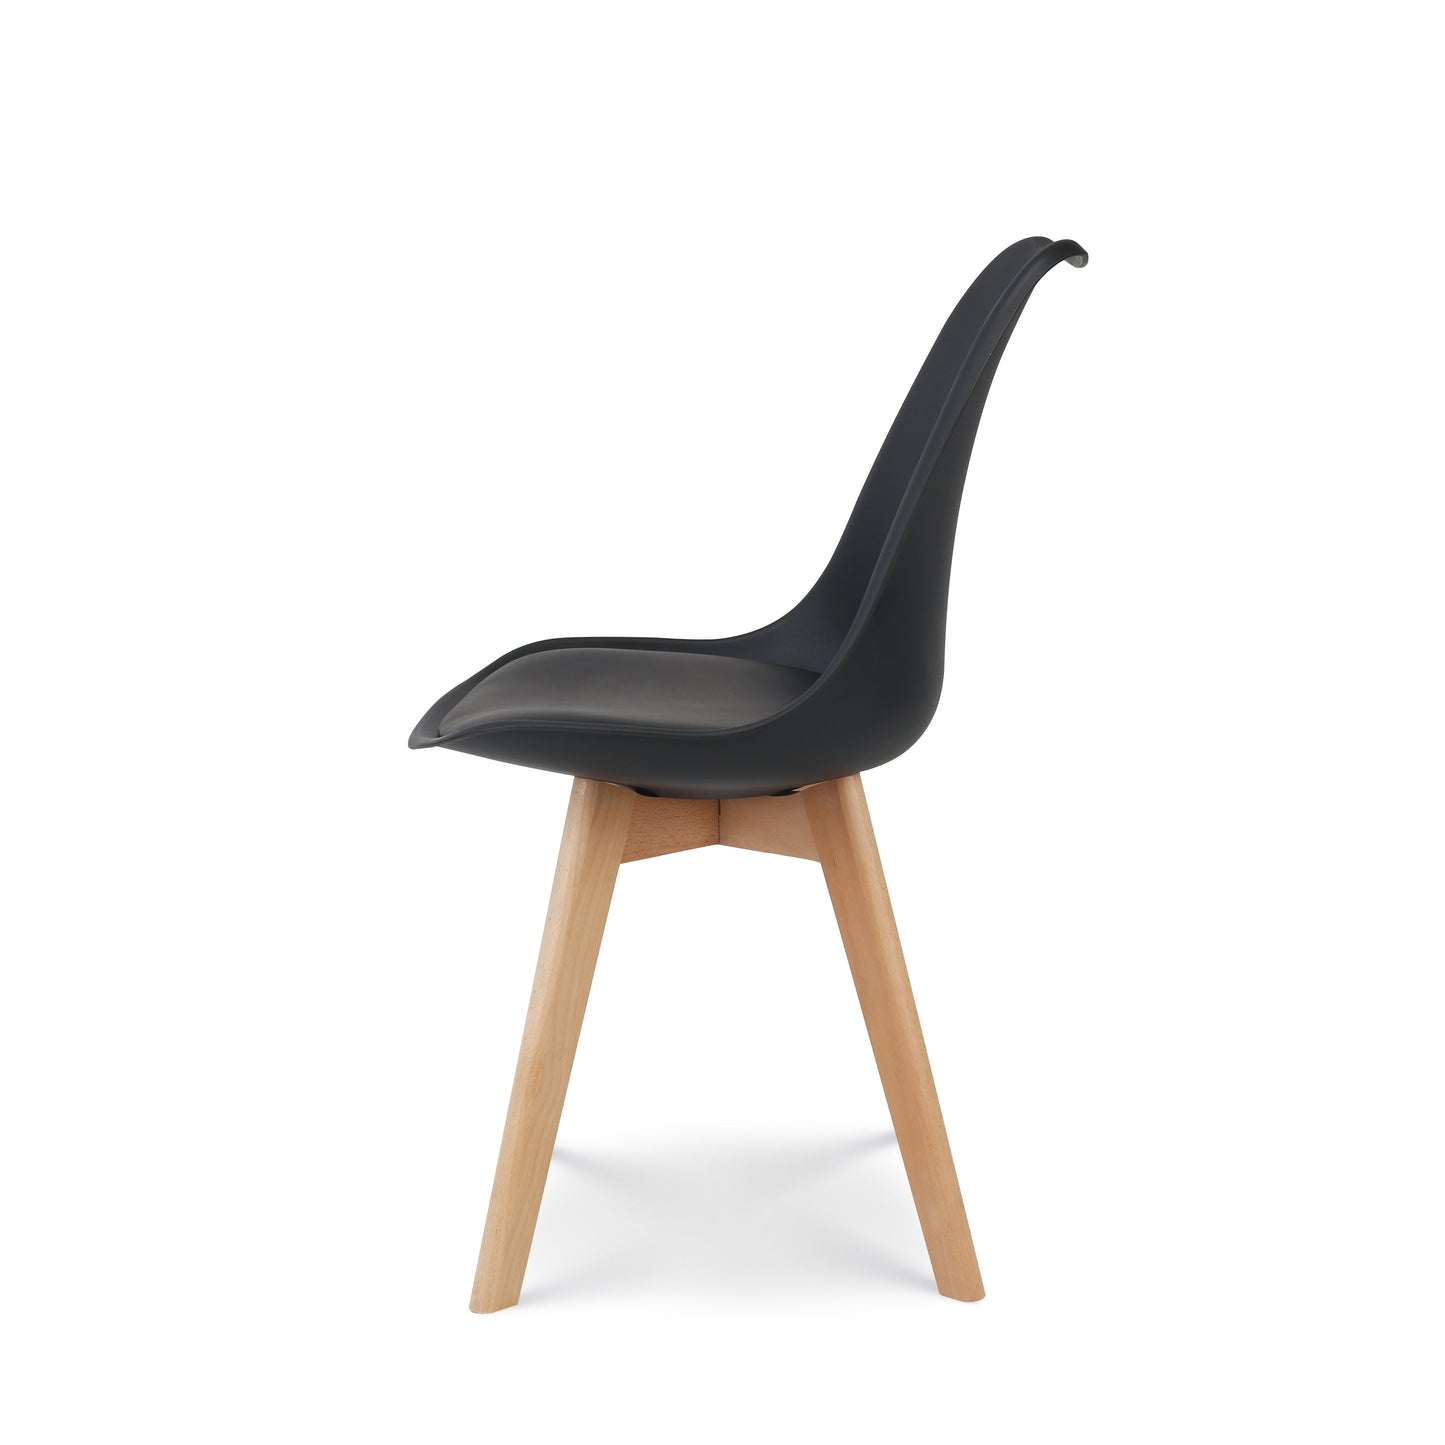 Chaise style scandinave VICTOIRE - Coque en résine noire rembourrée et pieds en bois naturel